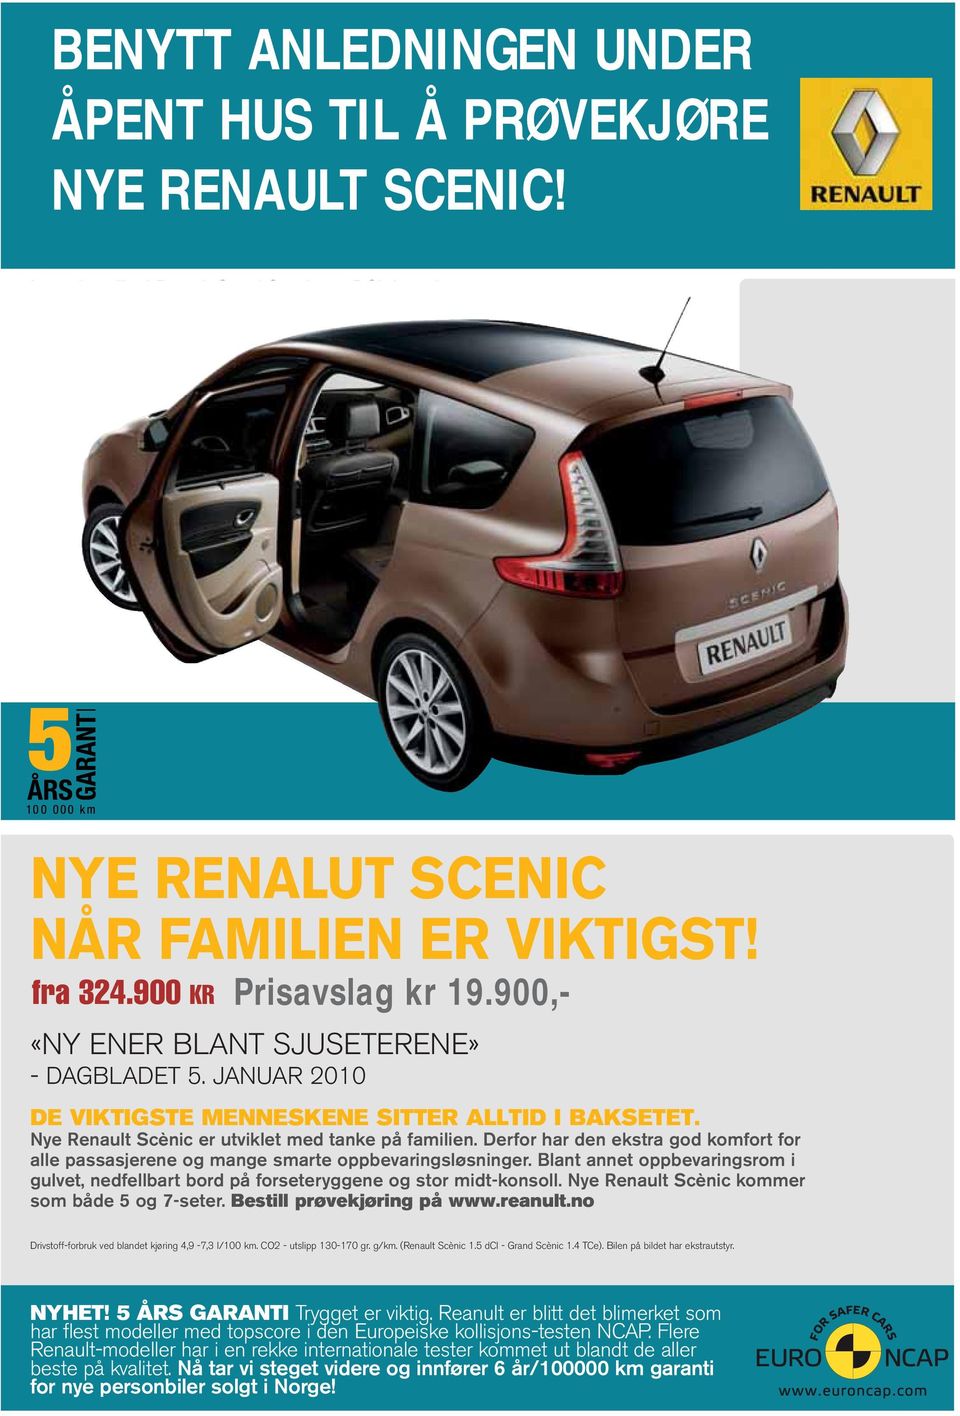 Nye Renault Scènic er utviklet med tanke på familien. Derfor har den ekstra god komfort for alle passasjerene og mange smarte oppbevaringsløsninger.